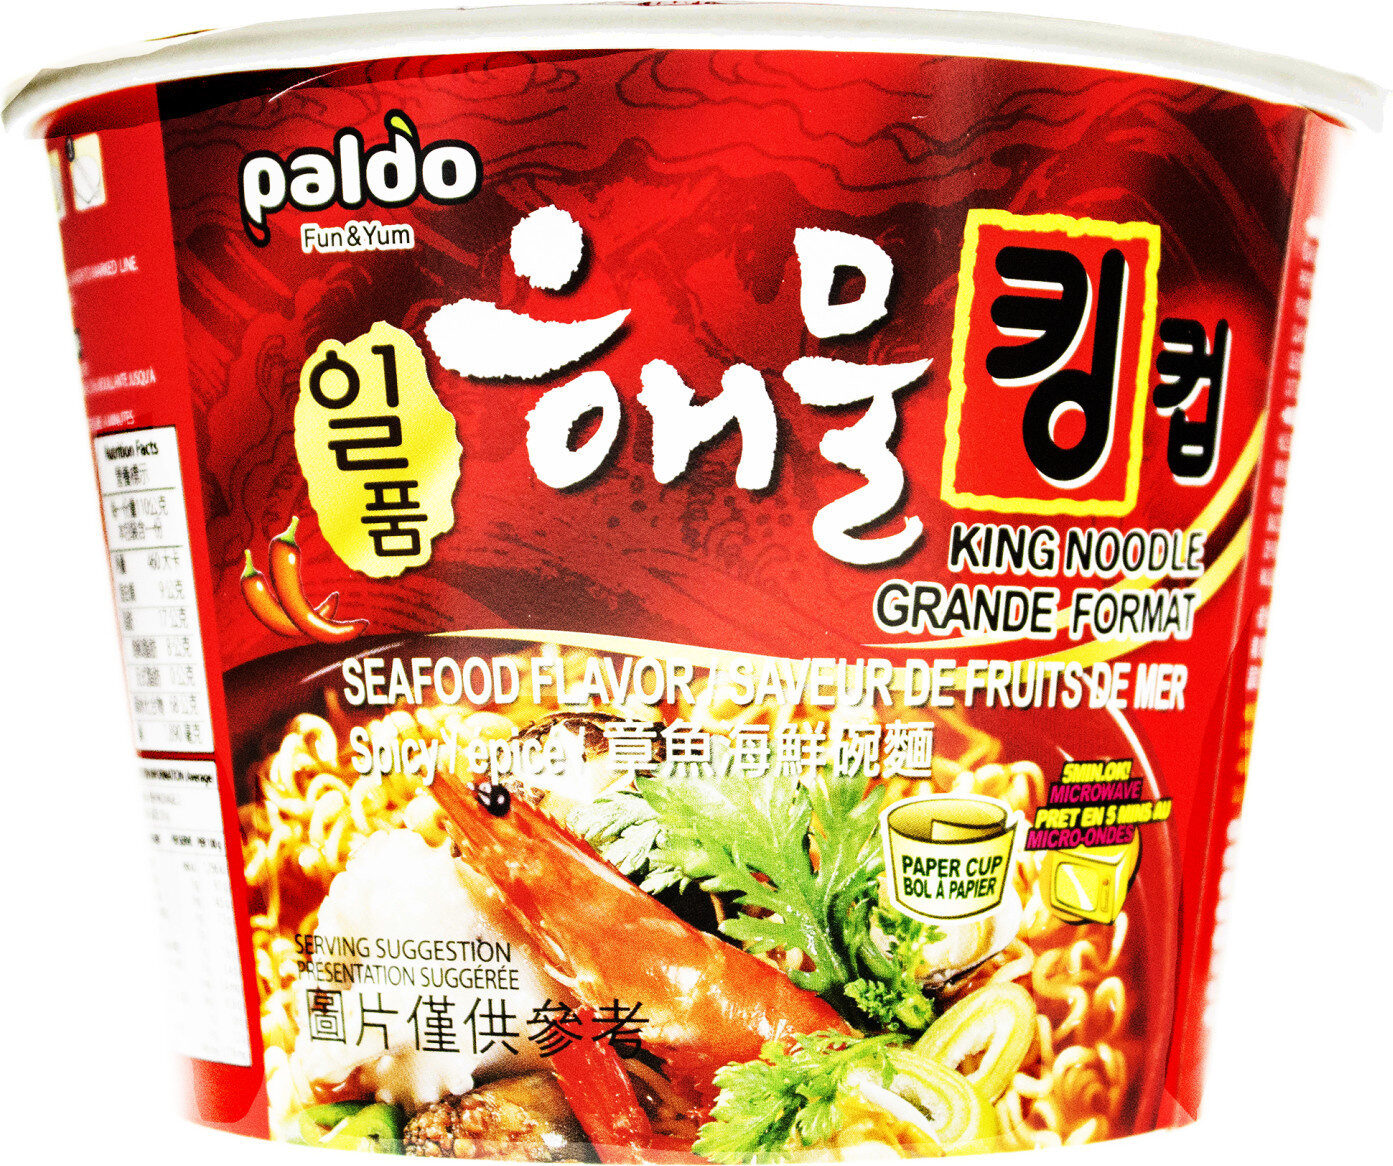 King noodle seafood flavor - Produkt - en